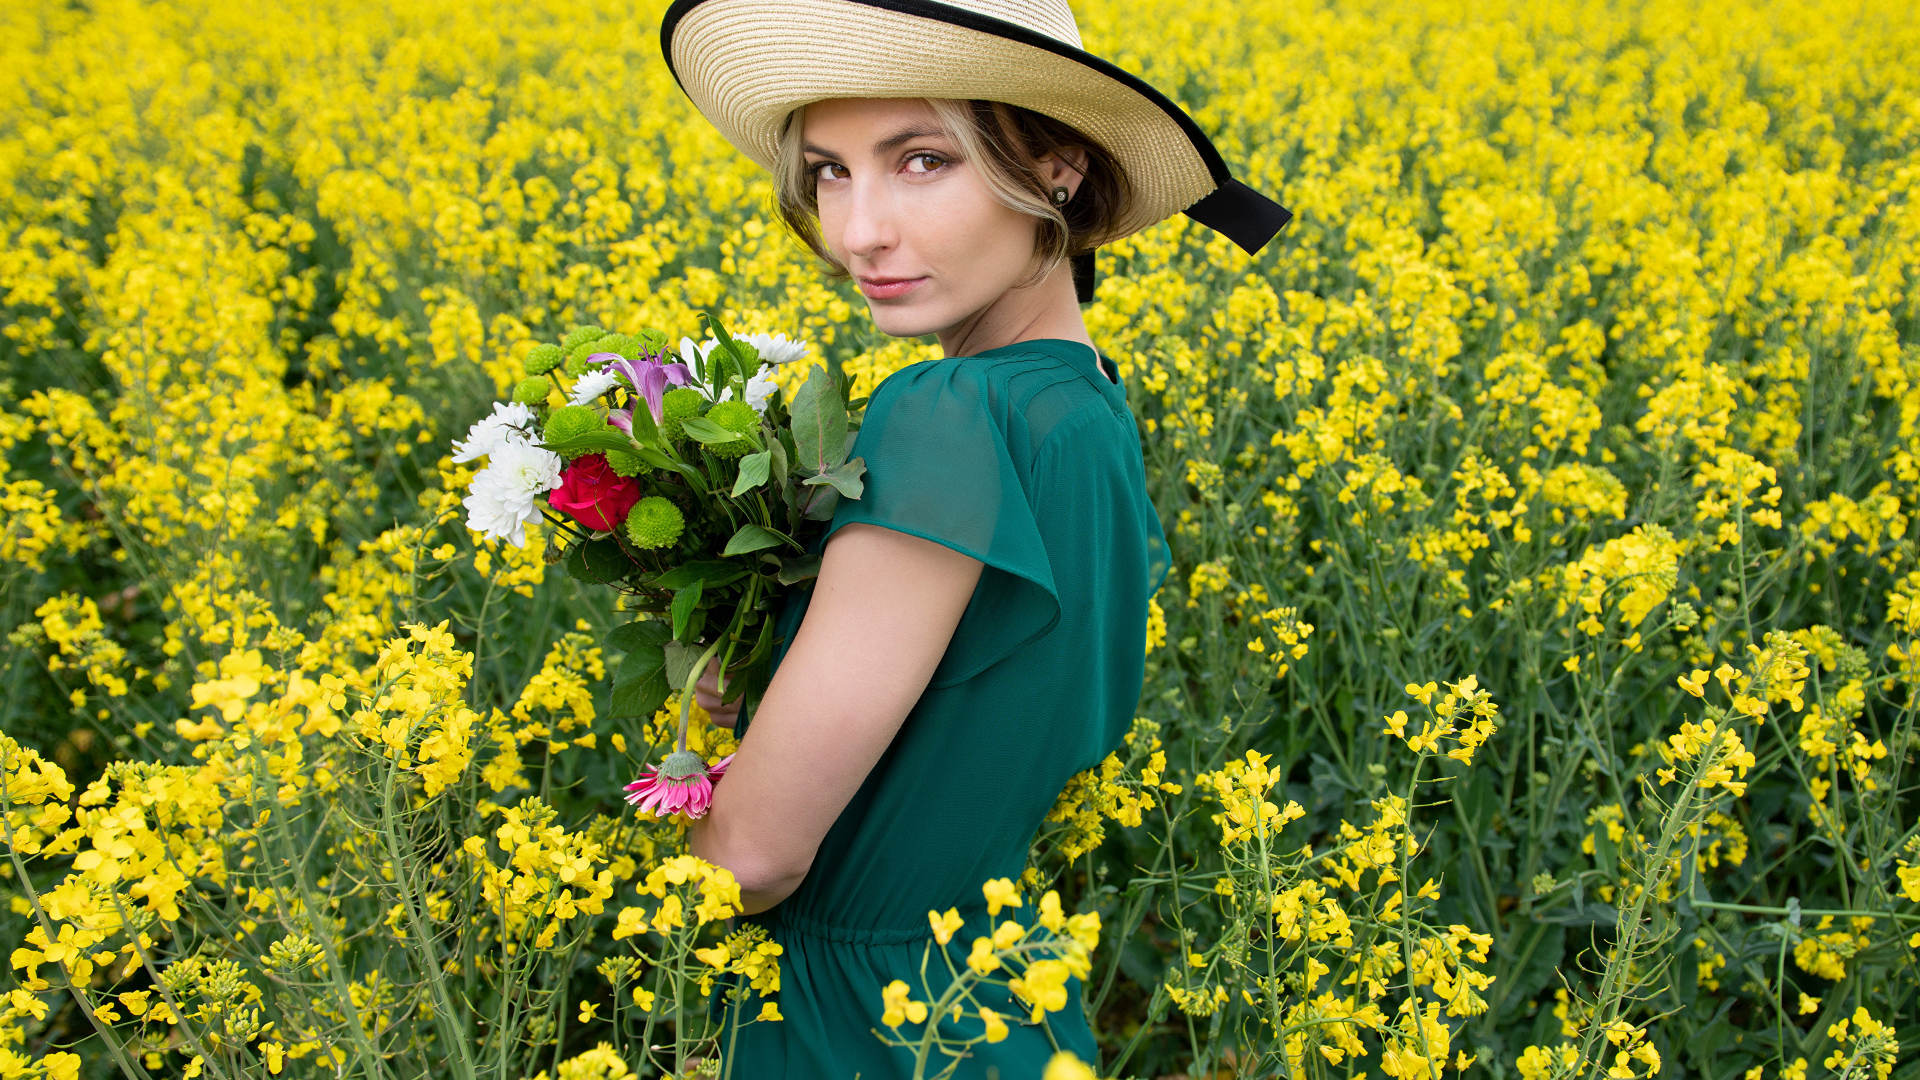 Красивая девушка в шляпе на поле с желтыми цветами летом